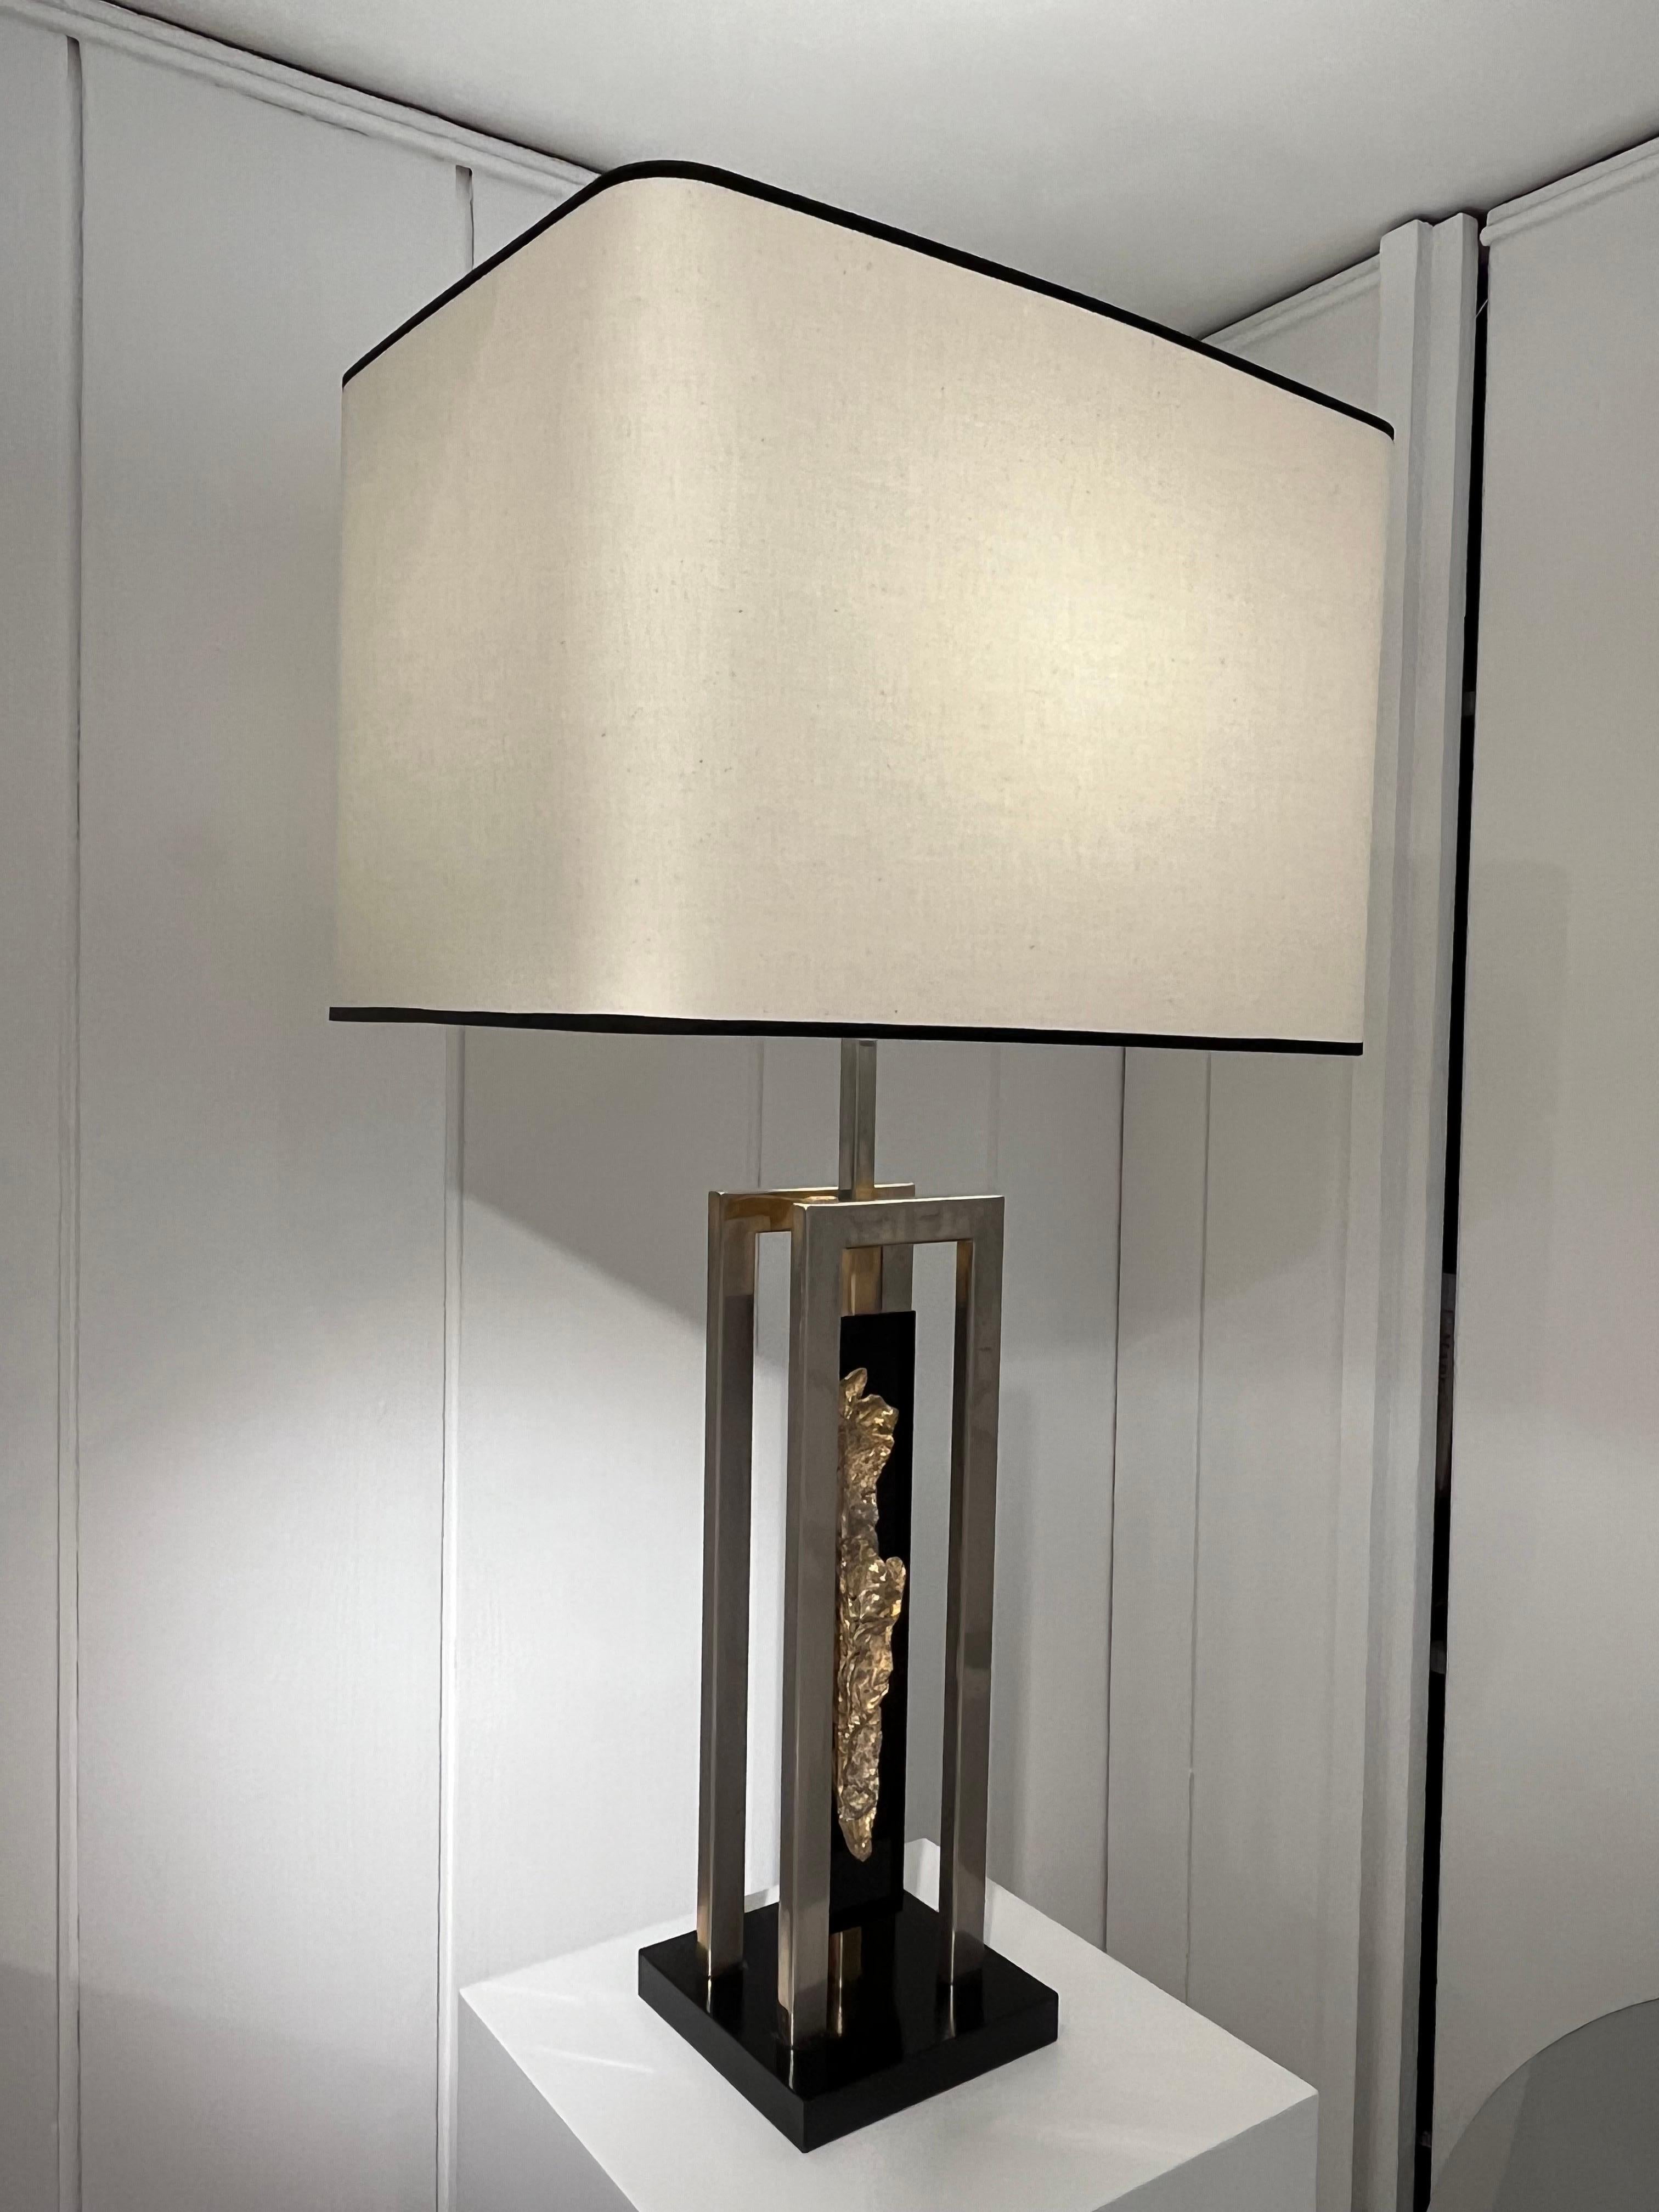 Vintage-Tischlampe aus verchromtem Stahl und Messing, montiert auf Lucit
Entworfen von Philippe Cheverny
Neuer Lampenschirm.

